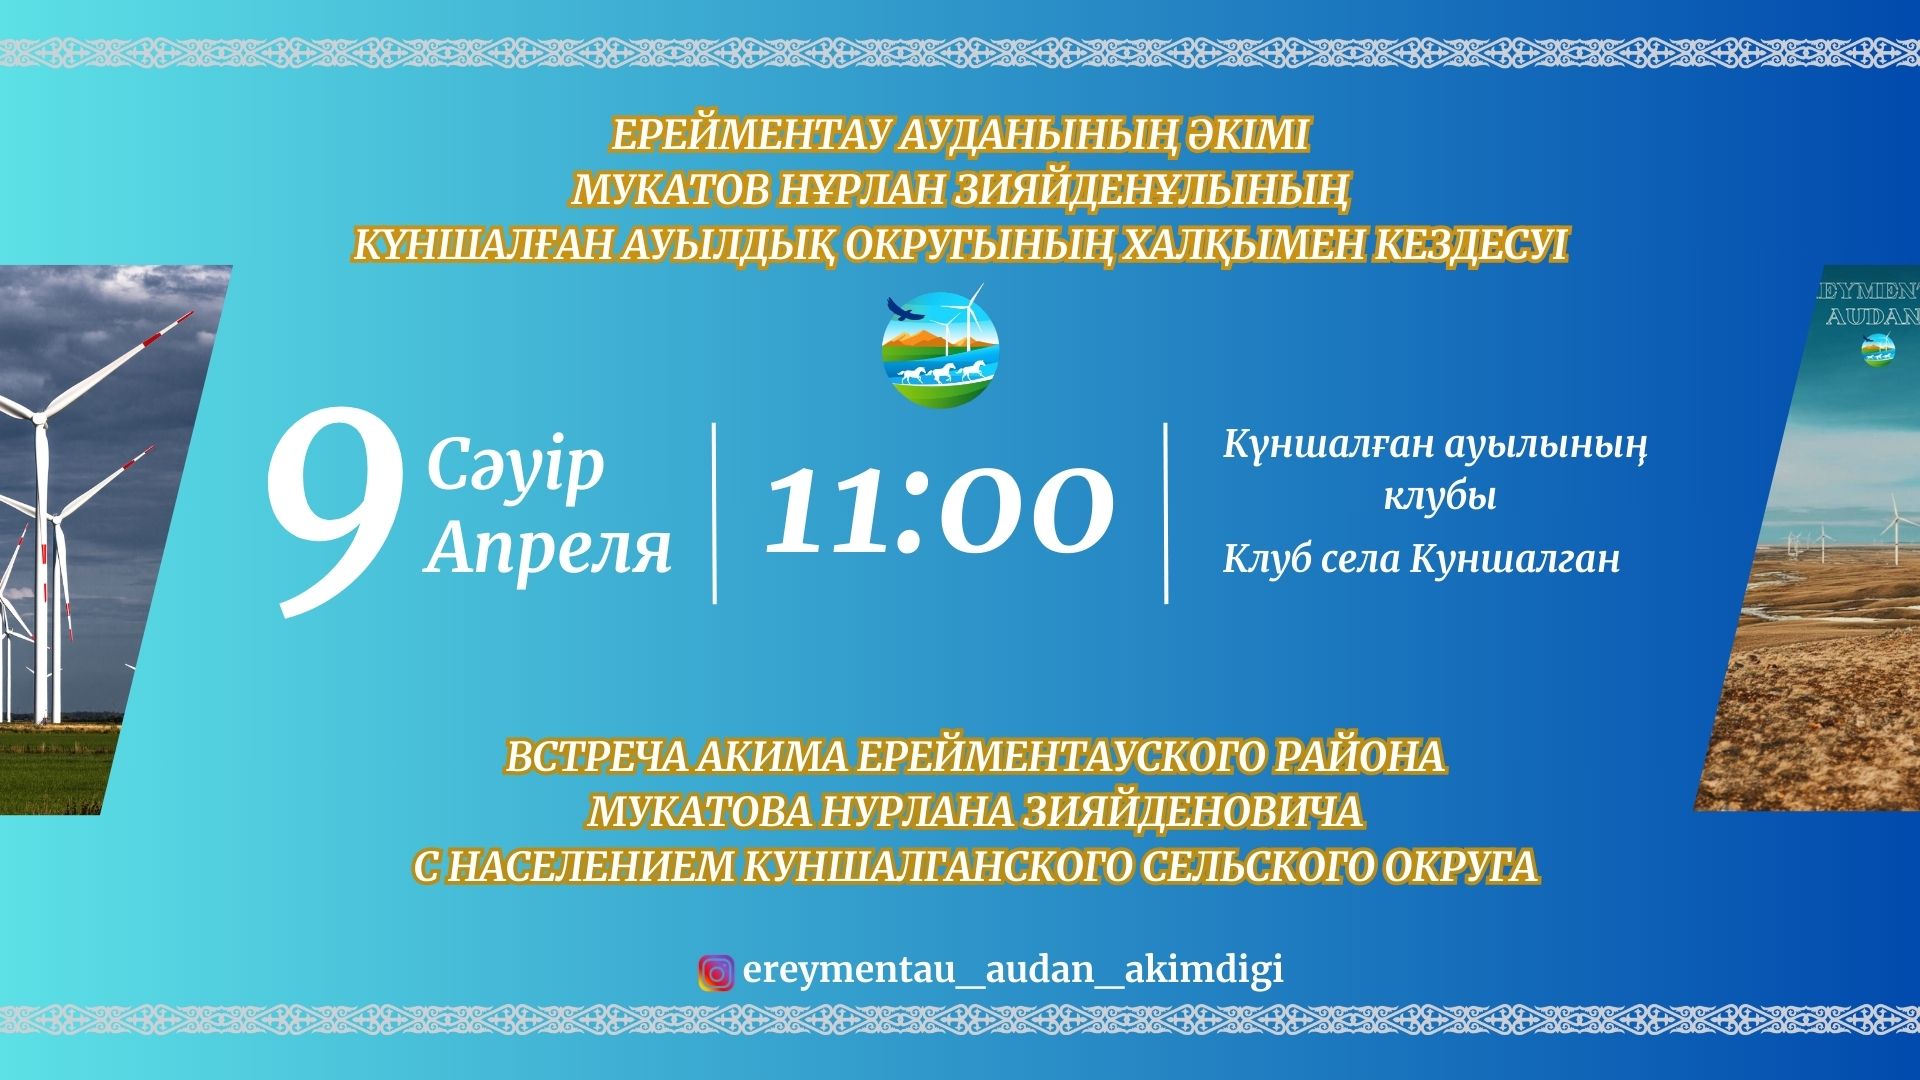 Состоится встреча акима Ерейментауского района Мукатова Нурлана Зияйденовича с населением Куншалганского сельского округа.